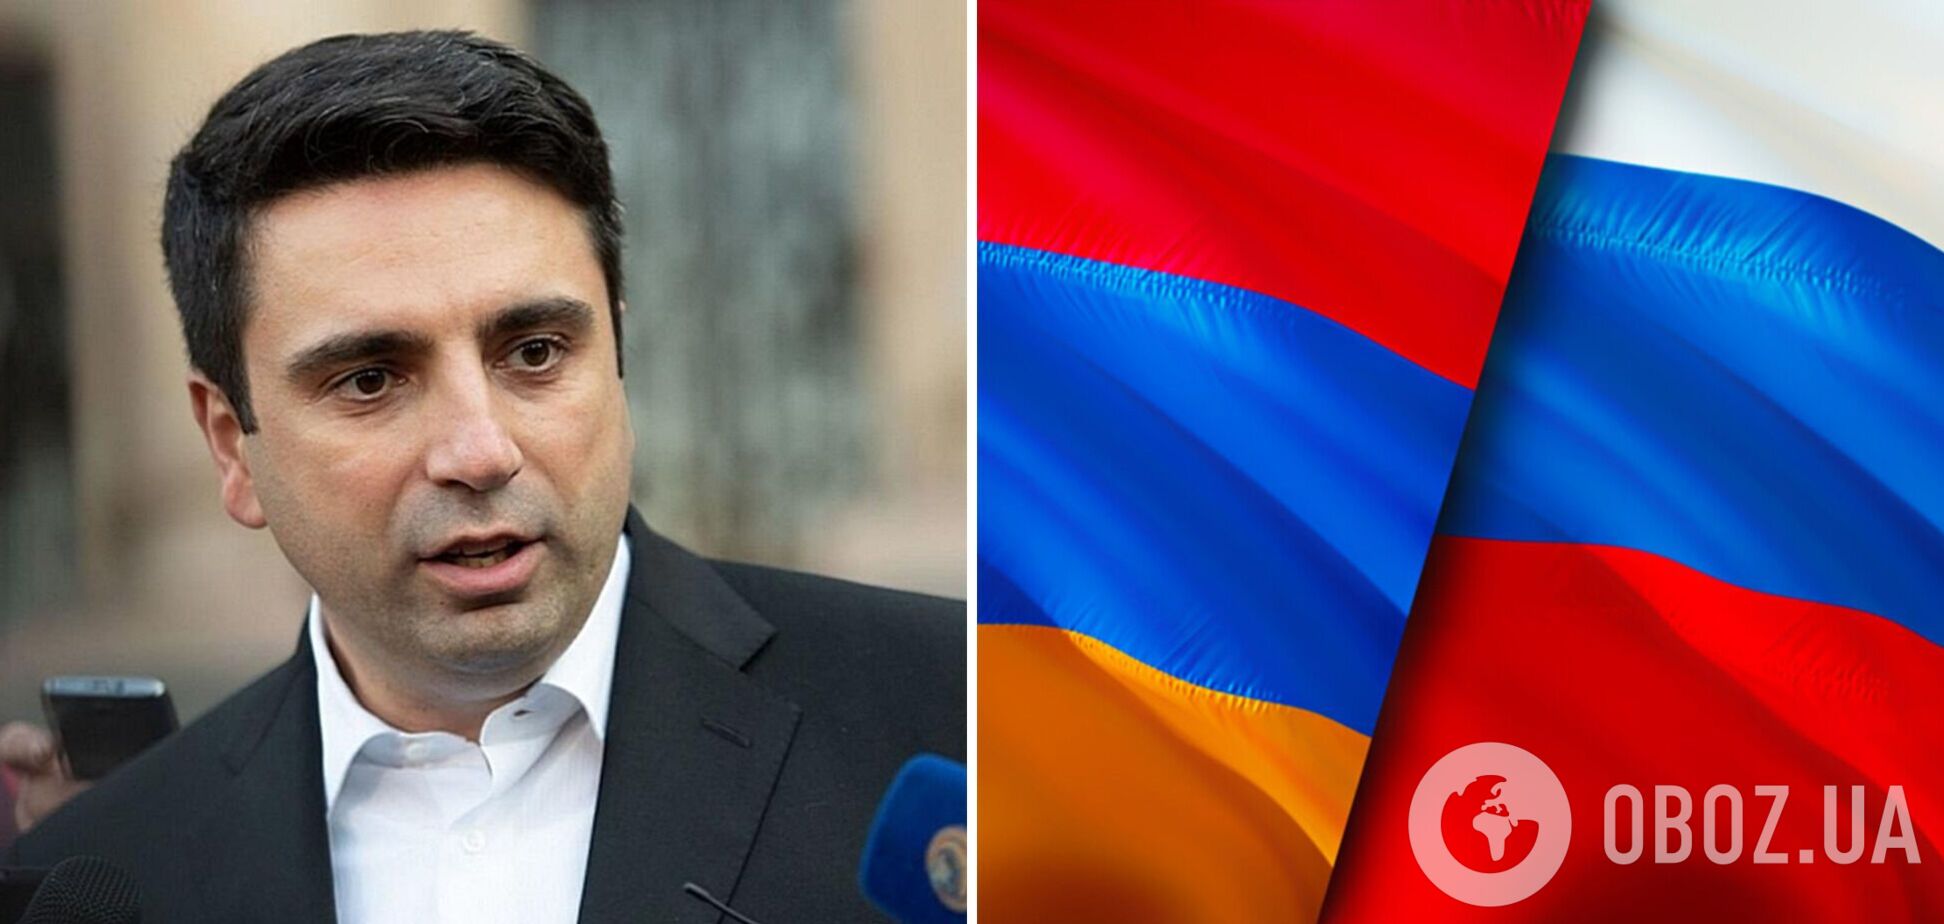 'Сделали выводы': в Армении обиделись на РФ, которая не помогла в боях с Азербайджаном